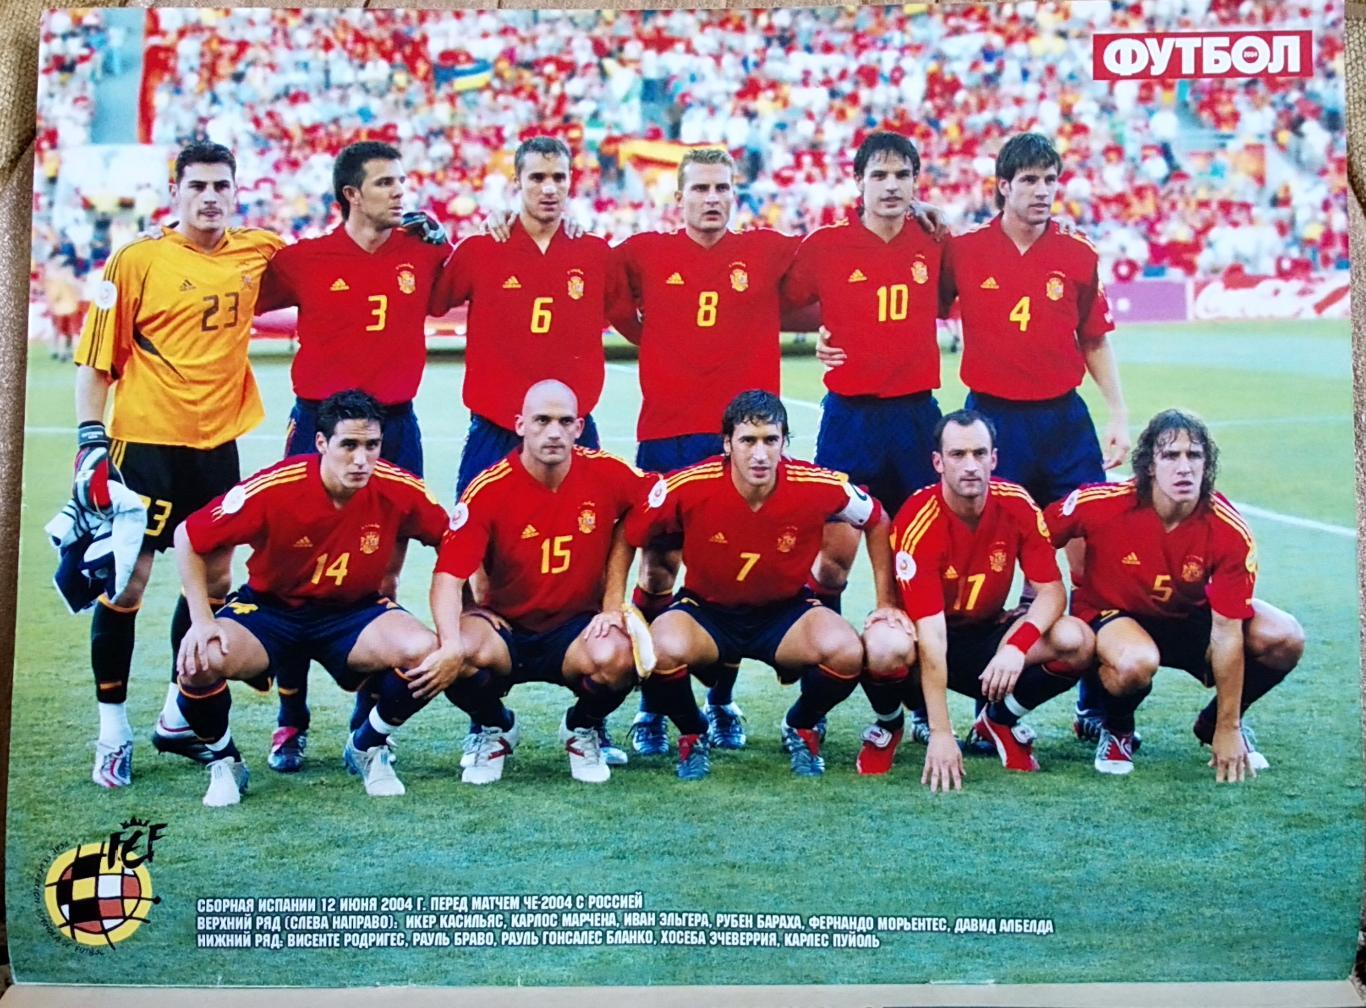 Журнал. Футбол. Спецвидання.N 8/2004. Постери Іспанія, Латвія. 1